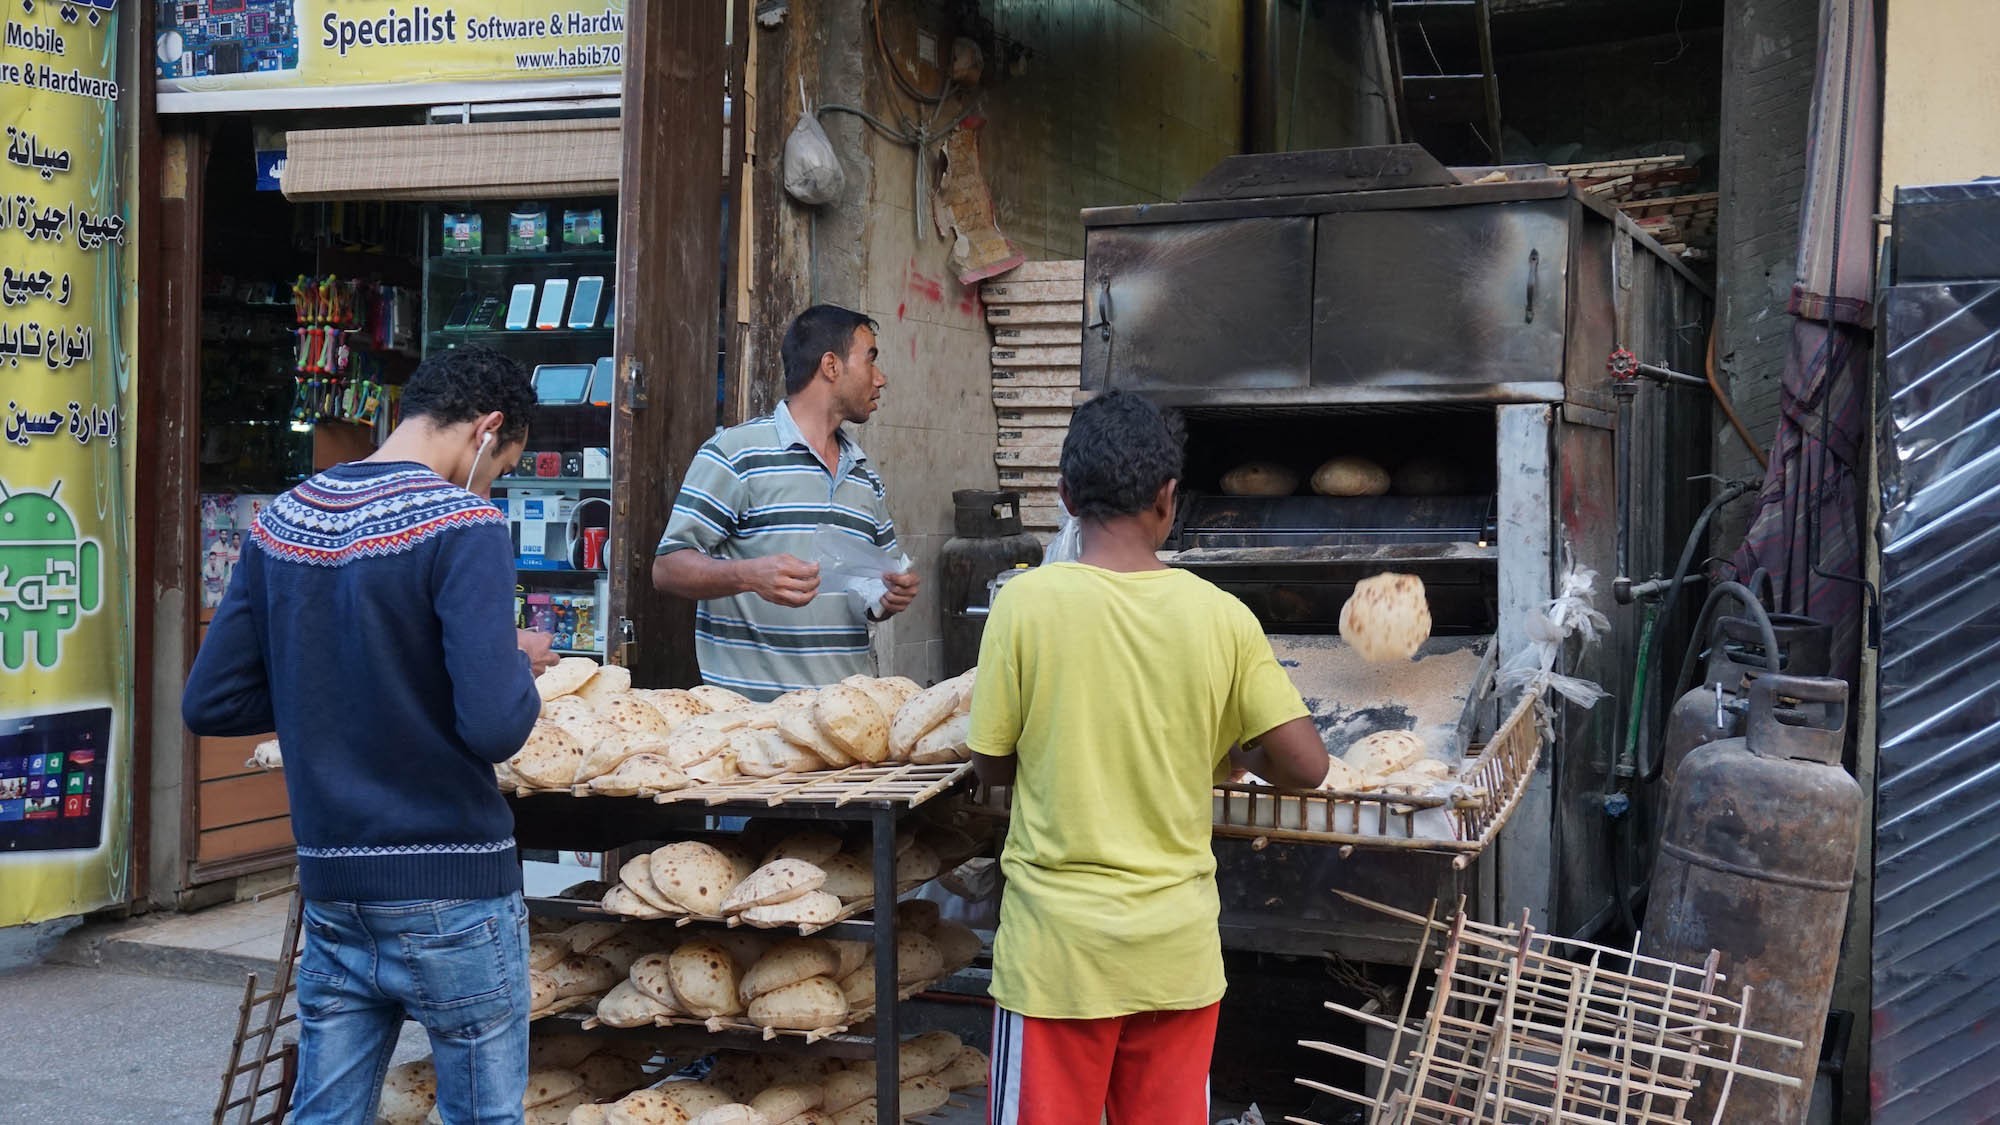 在卡利利市场里溜达时拍到的照片。传统的埃及面包，也是只有埃及特有的面包。据说面包的制作发明于古埃及，以前的人只会做饼，到后来埃及人发现了发酵的方法才有了面包。这面包是埃及人的主食，可对我们来说却是每一餐的Side dish，通常是免费无限量供应的。吃这个，就是和古代法老吃一样的面包，连打战时埃及的士兵也被古希腊敌人称为‘吃面包的人’，可见埃及人和面包是分不开的哦！